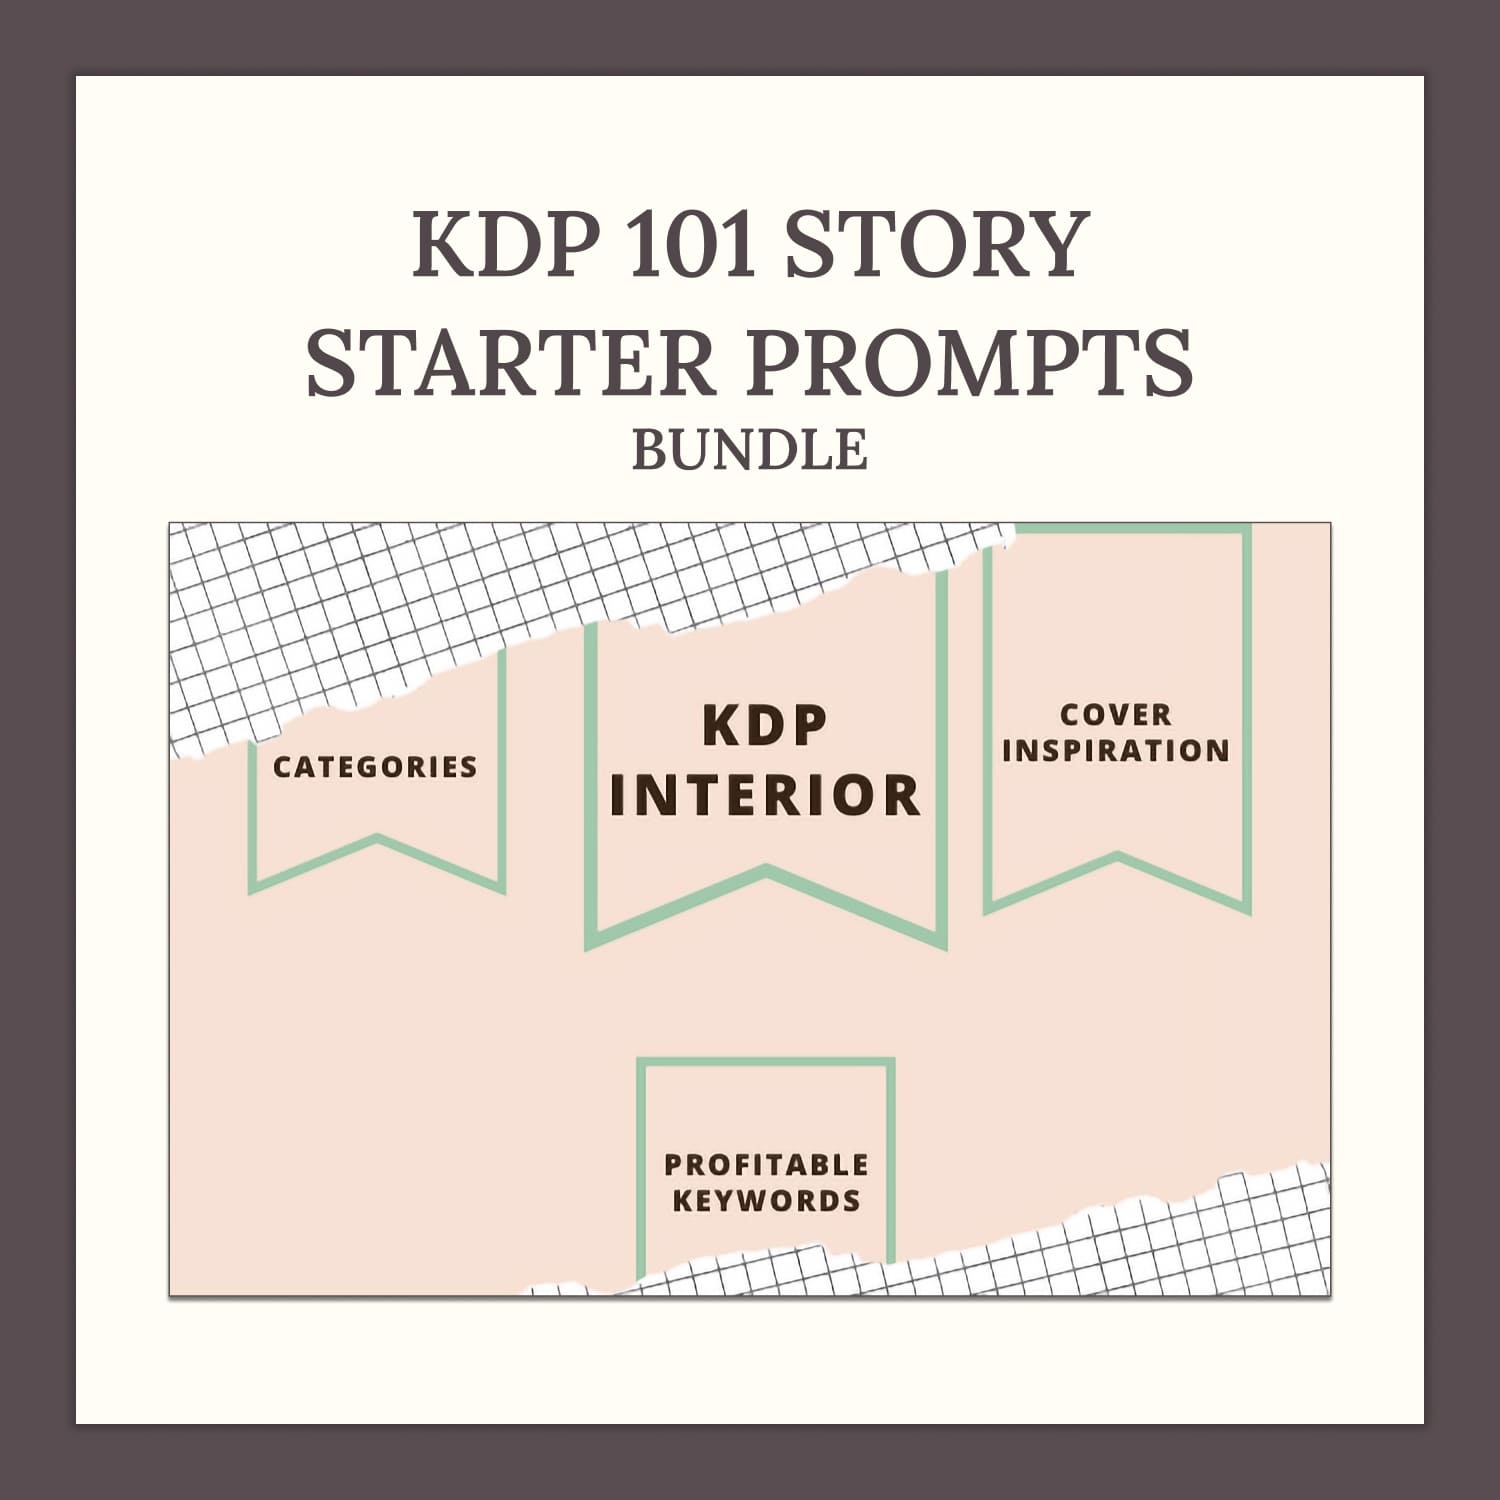 KDP 101 Story Starter Prompts Bundle.